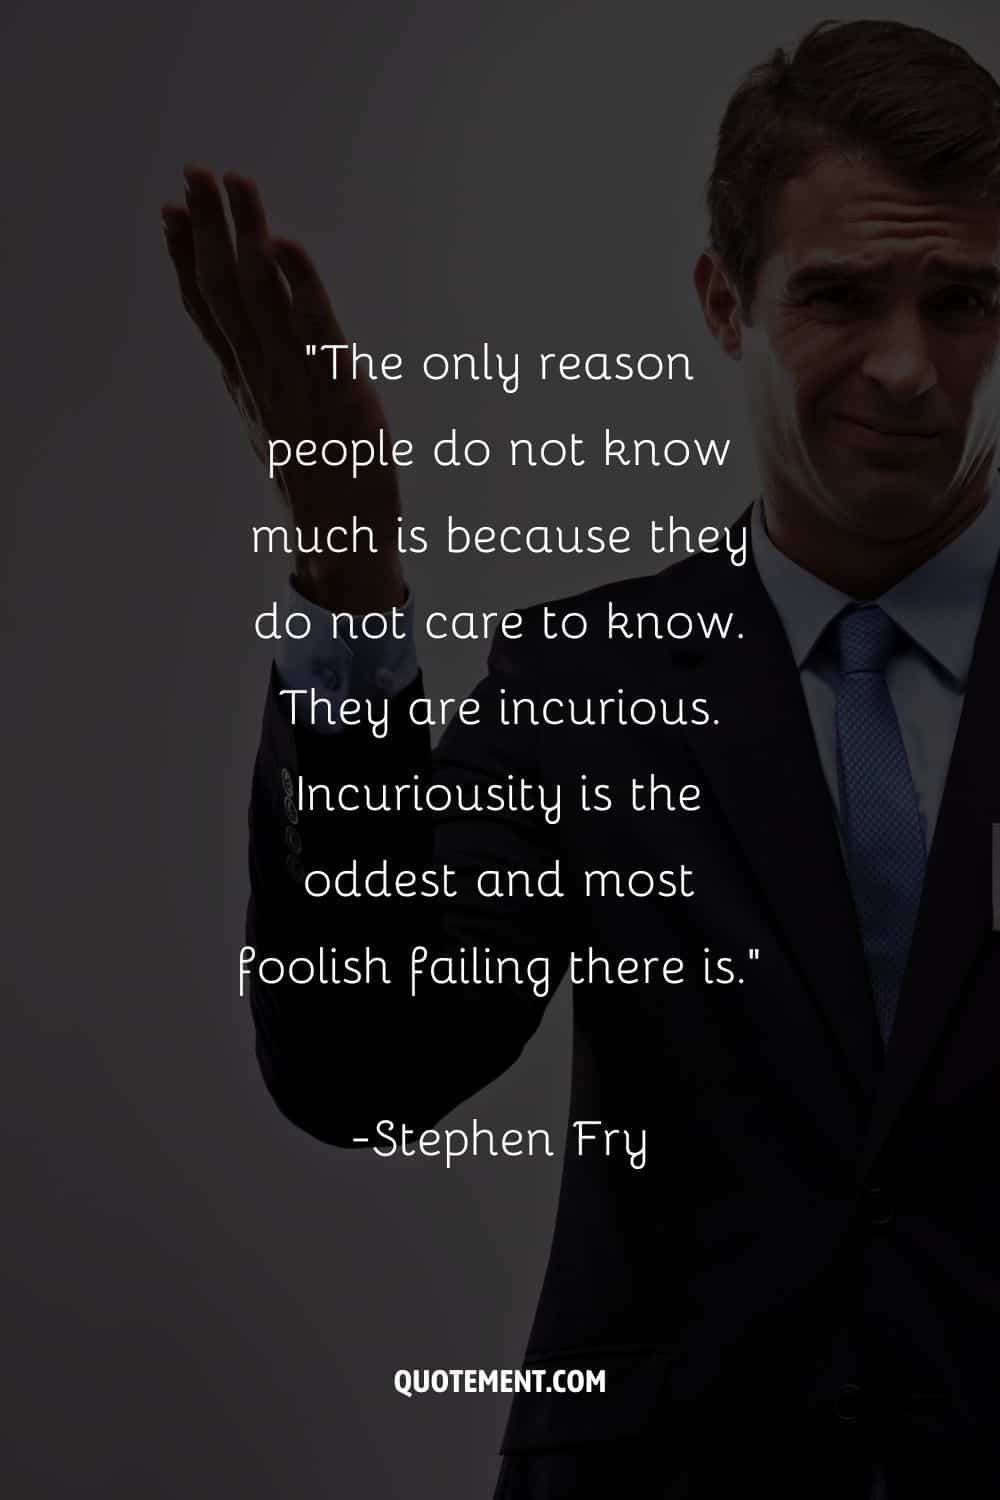 La única razón por la que la gente no sabe mucho es porque no les interesa saber.